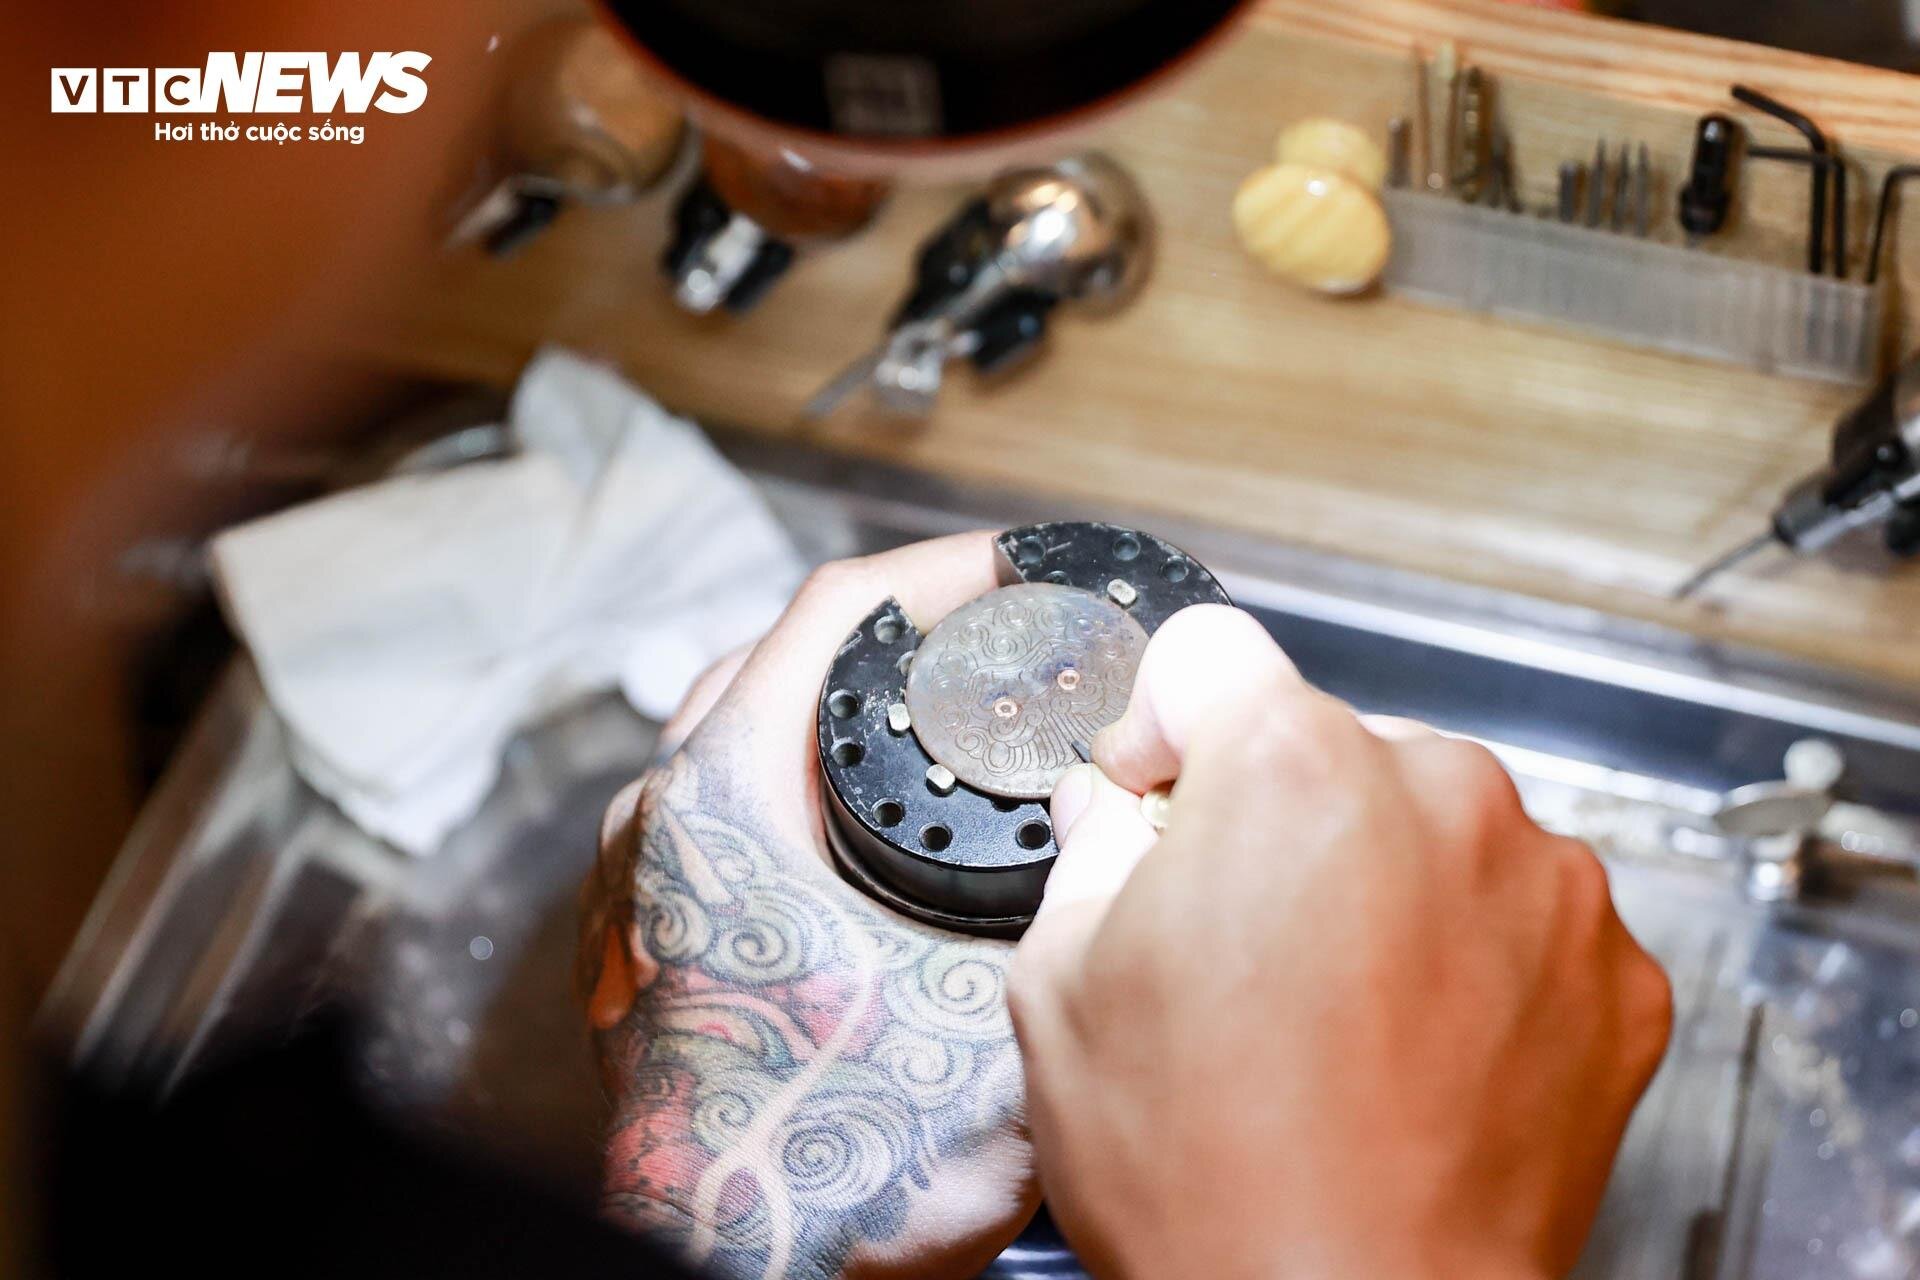 Chiếc đồng hồ bằng titan được thợ thủ công Việt định giá 300 triệu đồng - 4